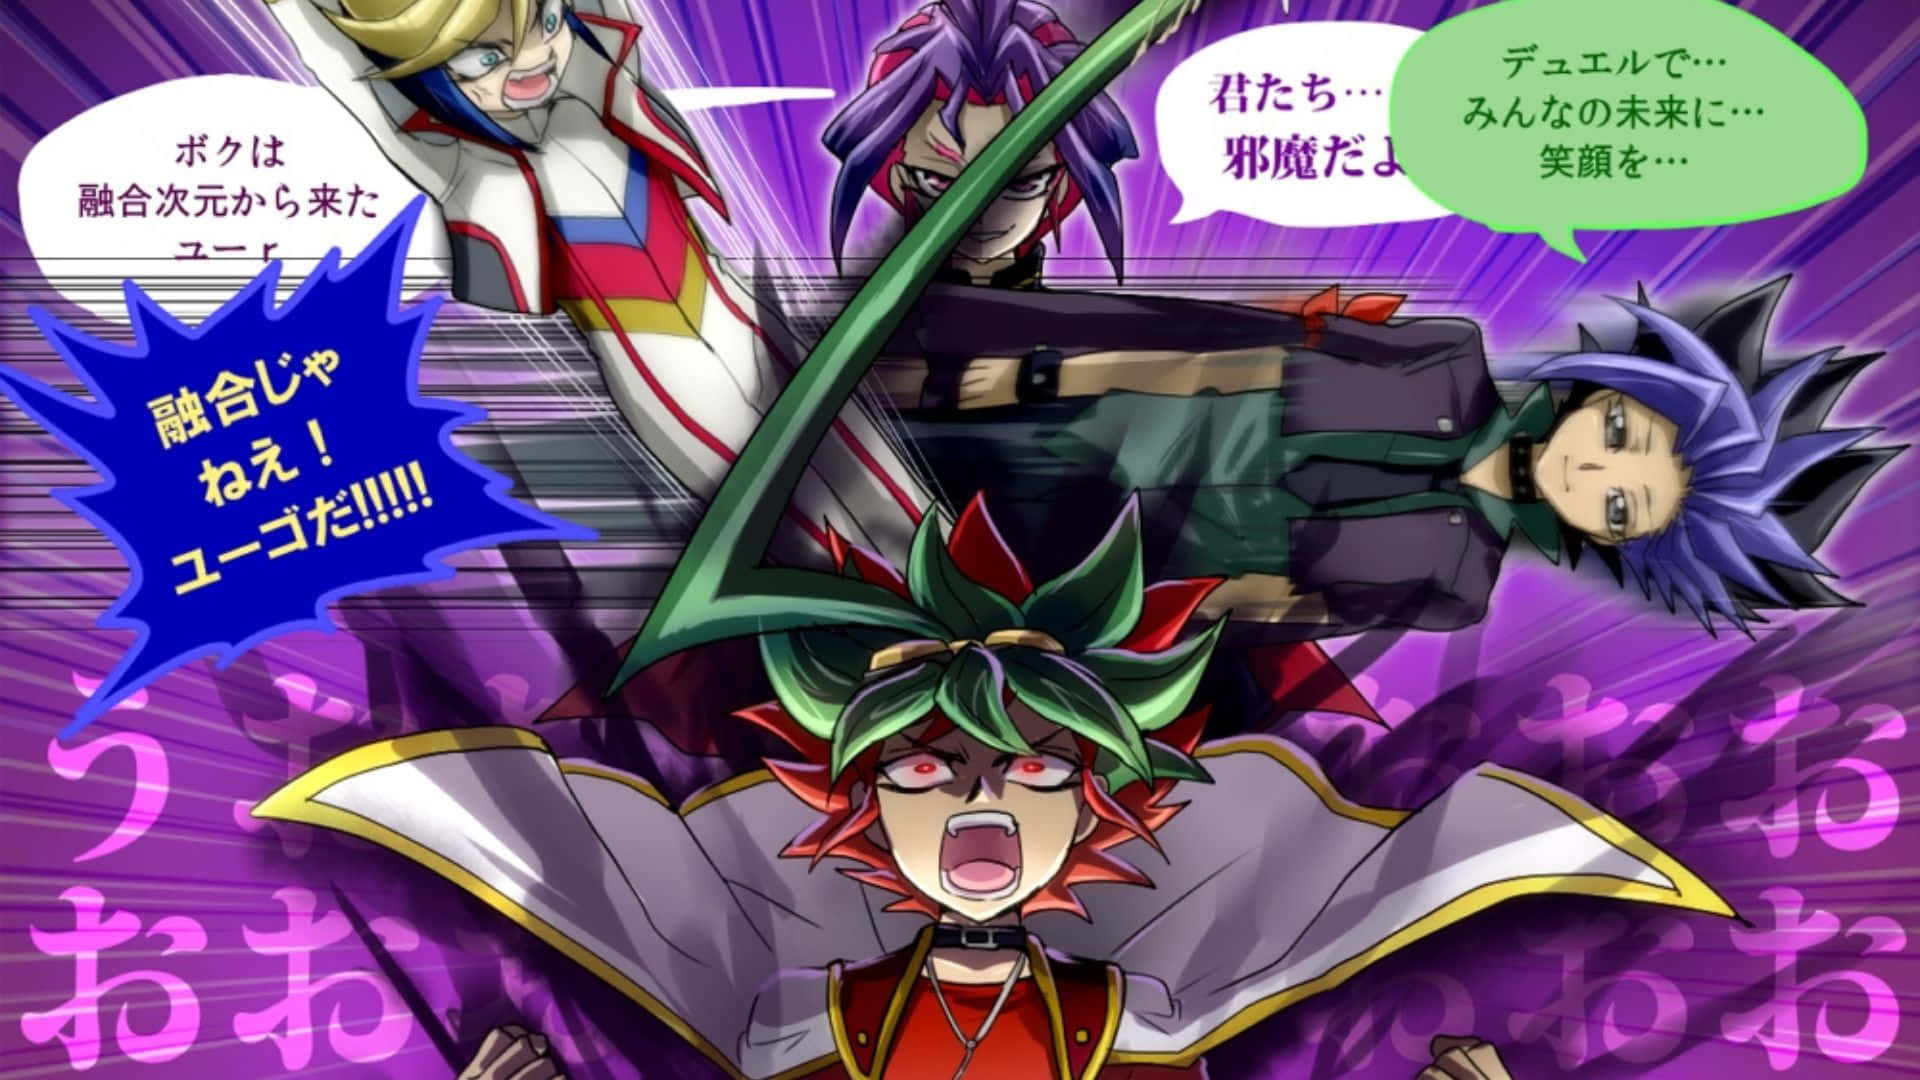 Yu-gi-oh Yuto unleashing his powerful Phantom Knights deck. Wallpaper